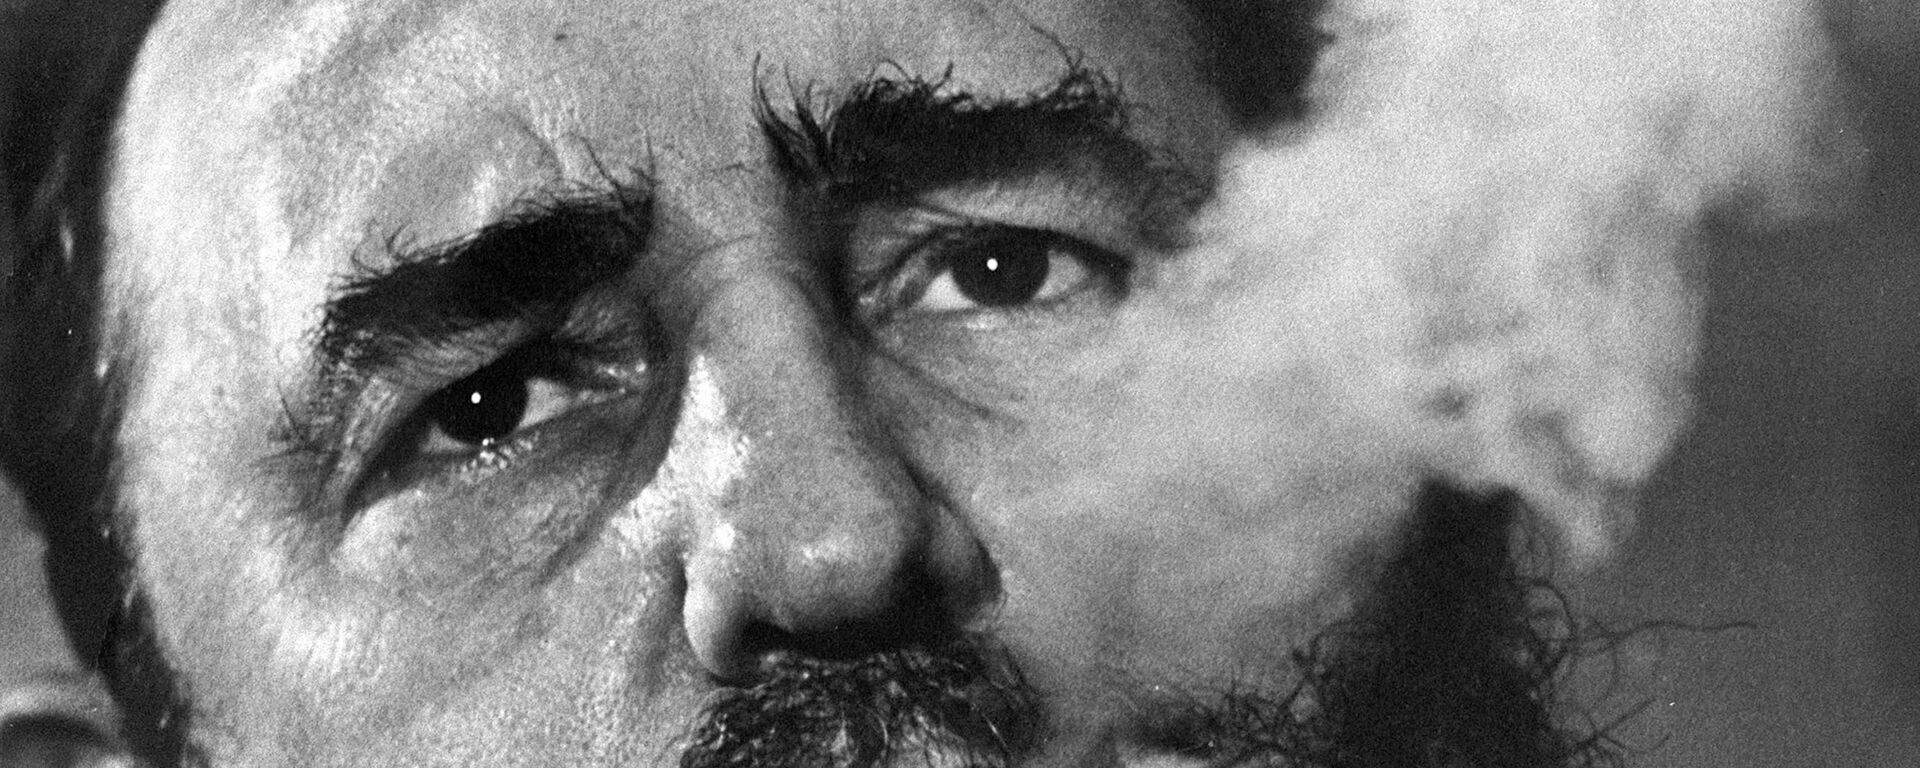 Кубинский лидер Фидель Кастро - Sputnik Абхазия, 1920, 25.11.2017